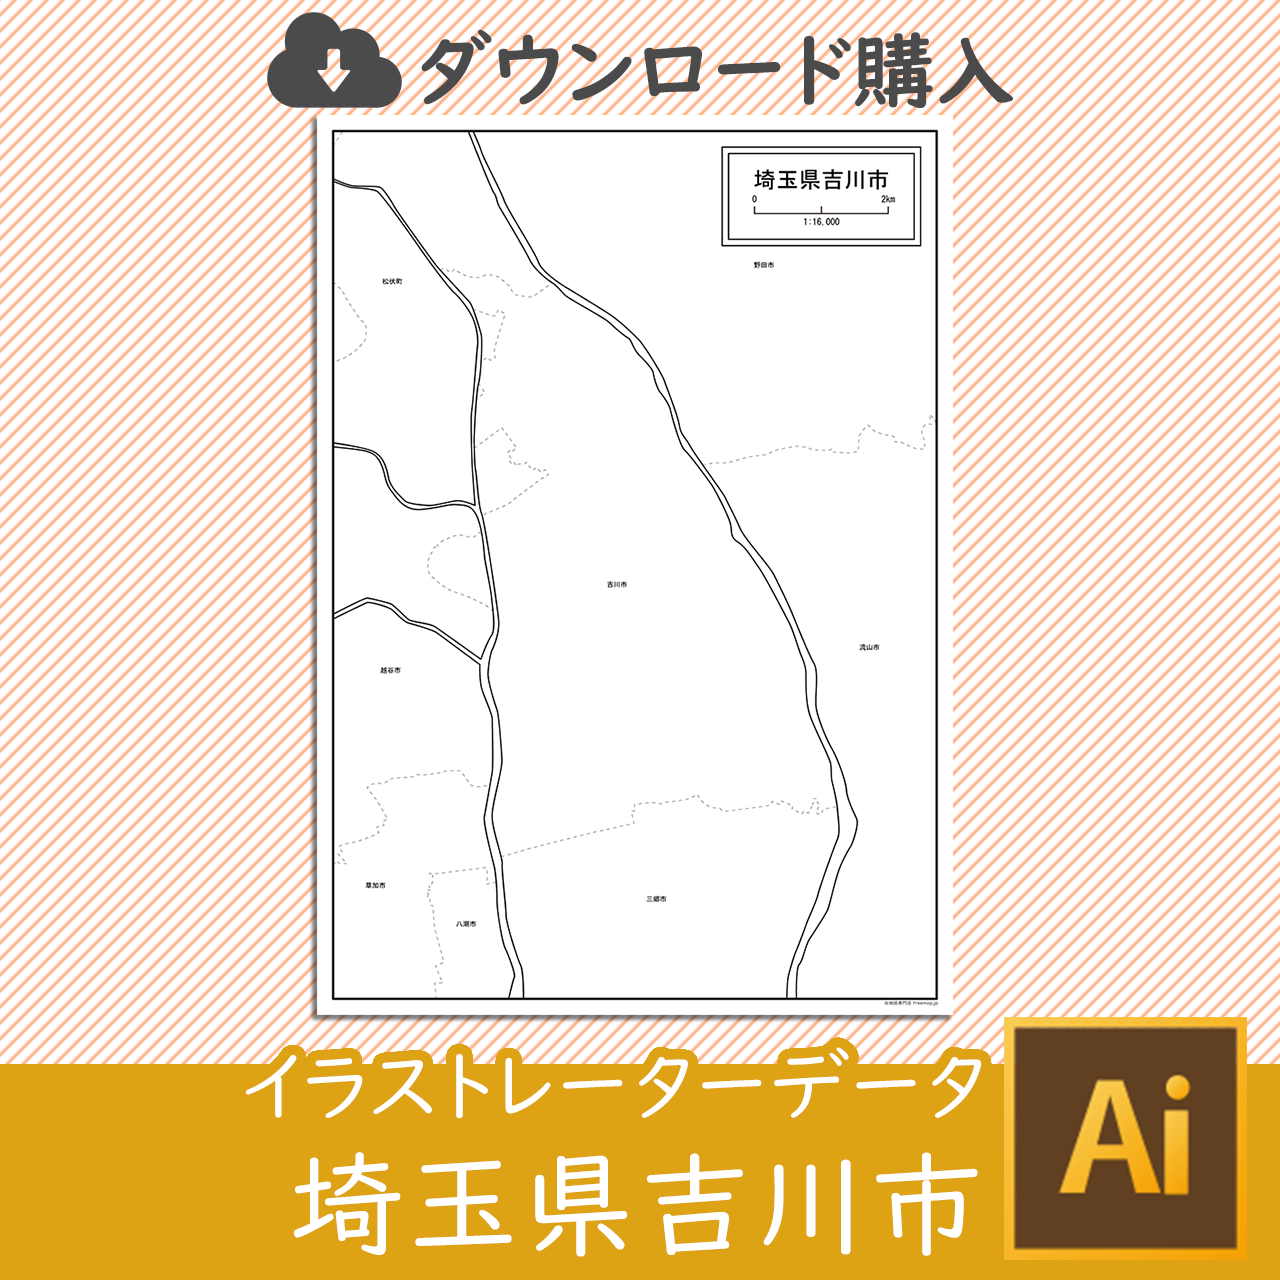 吉川市のaiデータのサムネイル画像